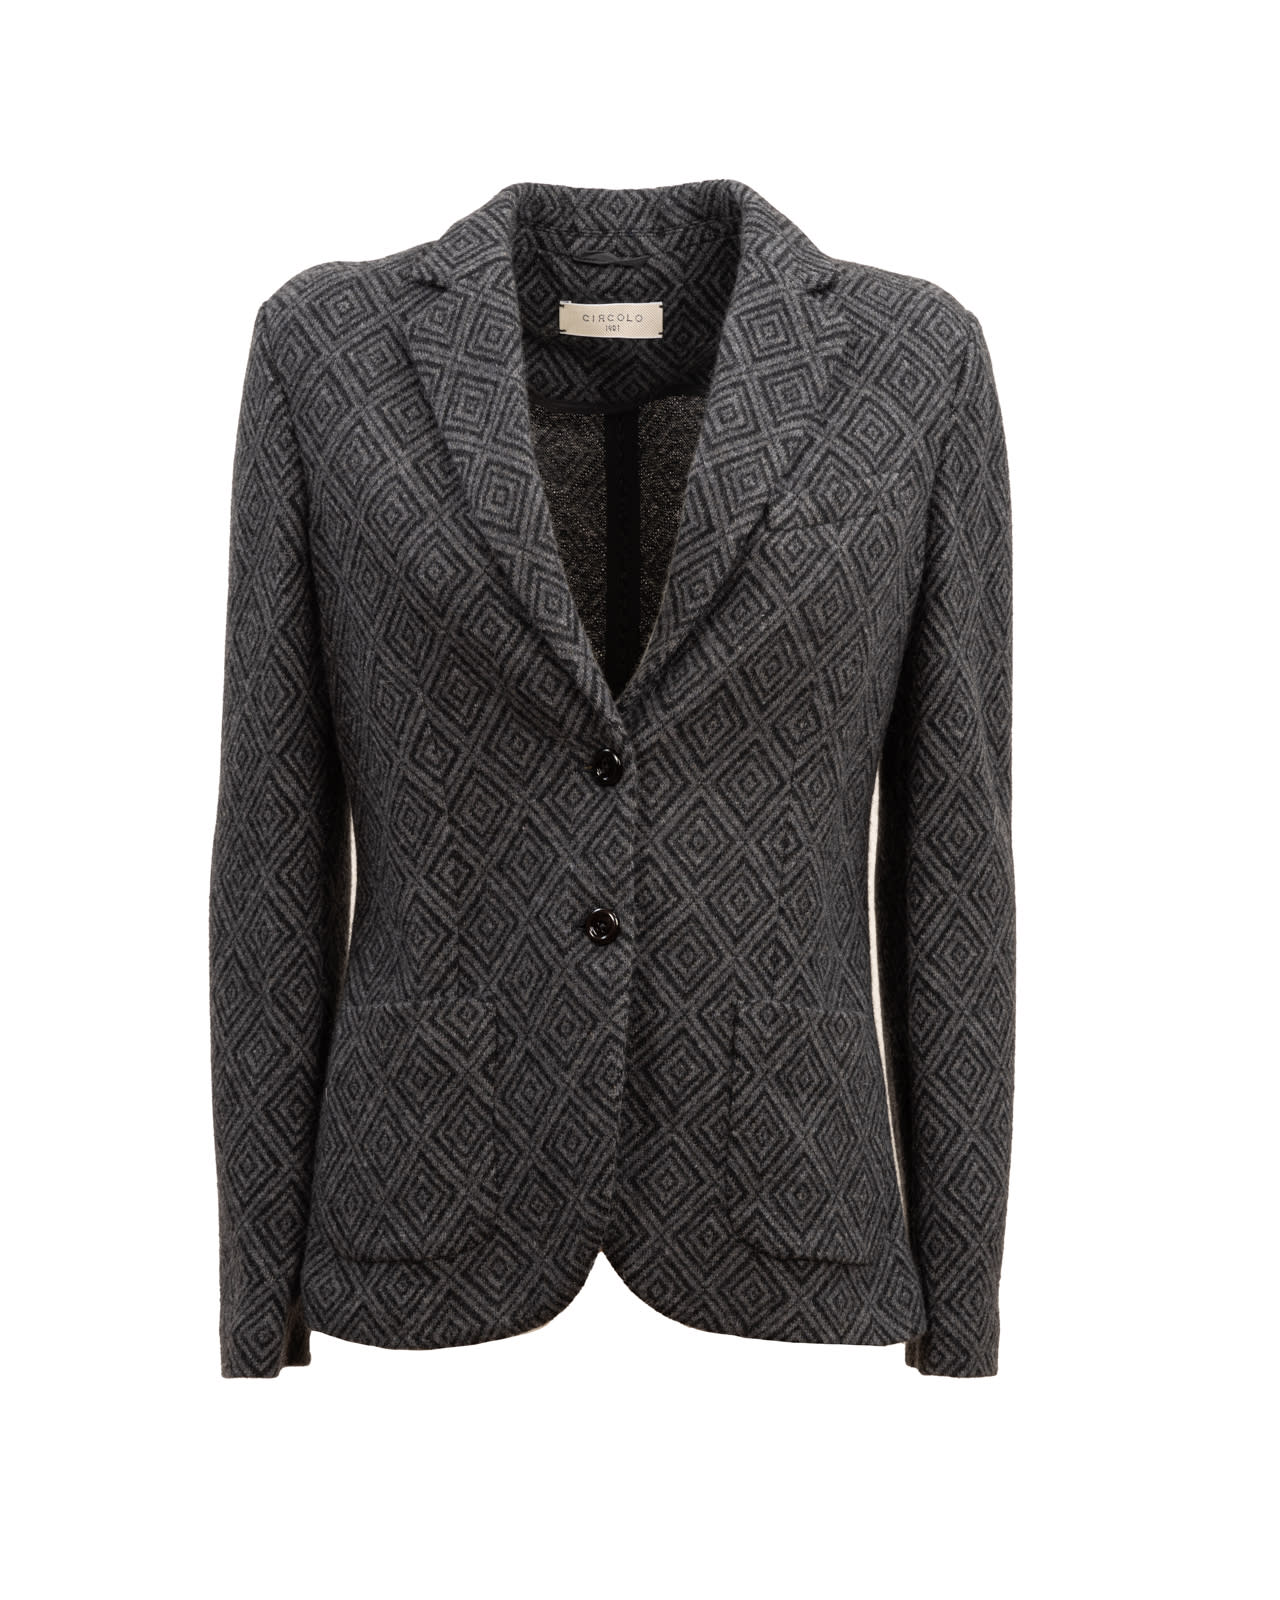 Circolo 1901 Circolo wool jacket